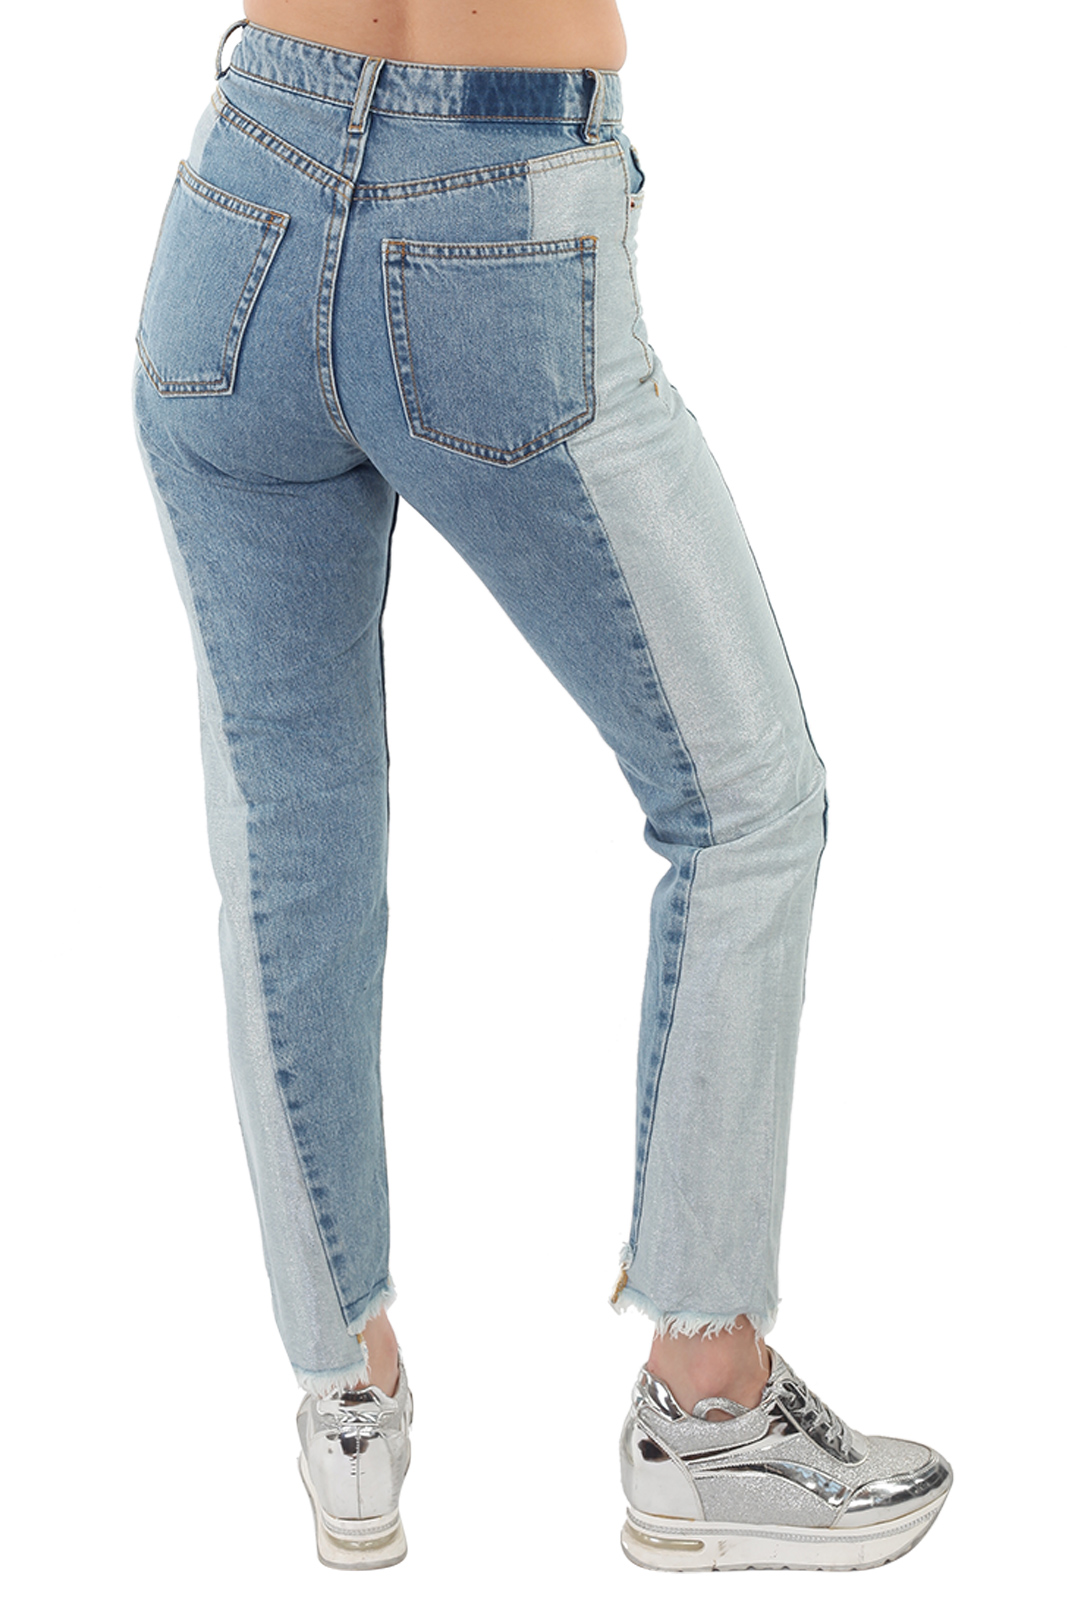 Модные джинсы для девушек и женщин – только свежие модели сезона